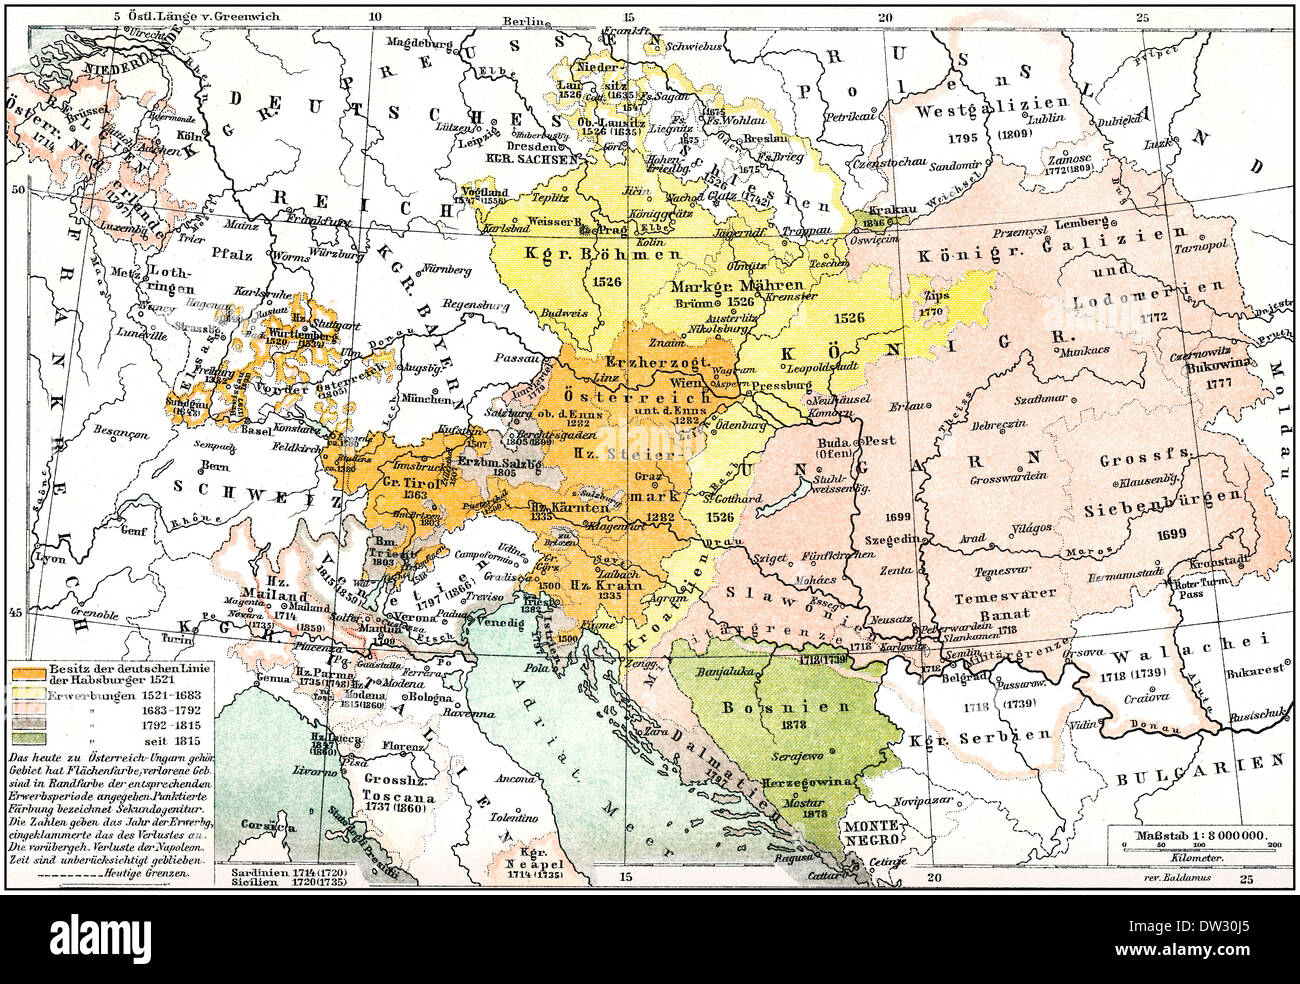 Historische Karte von Austria-Hungary, Doppelmonarchie oder Kuk-Monarchie, für den Zeitraum zwischen 1867 und 1918, 19. Jahrhundert Stockfoto